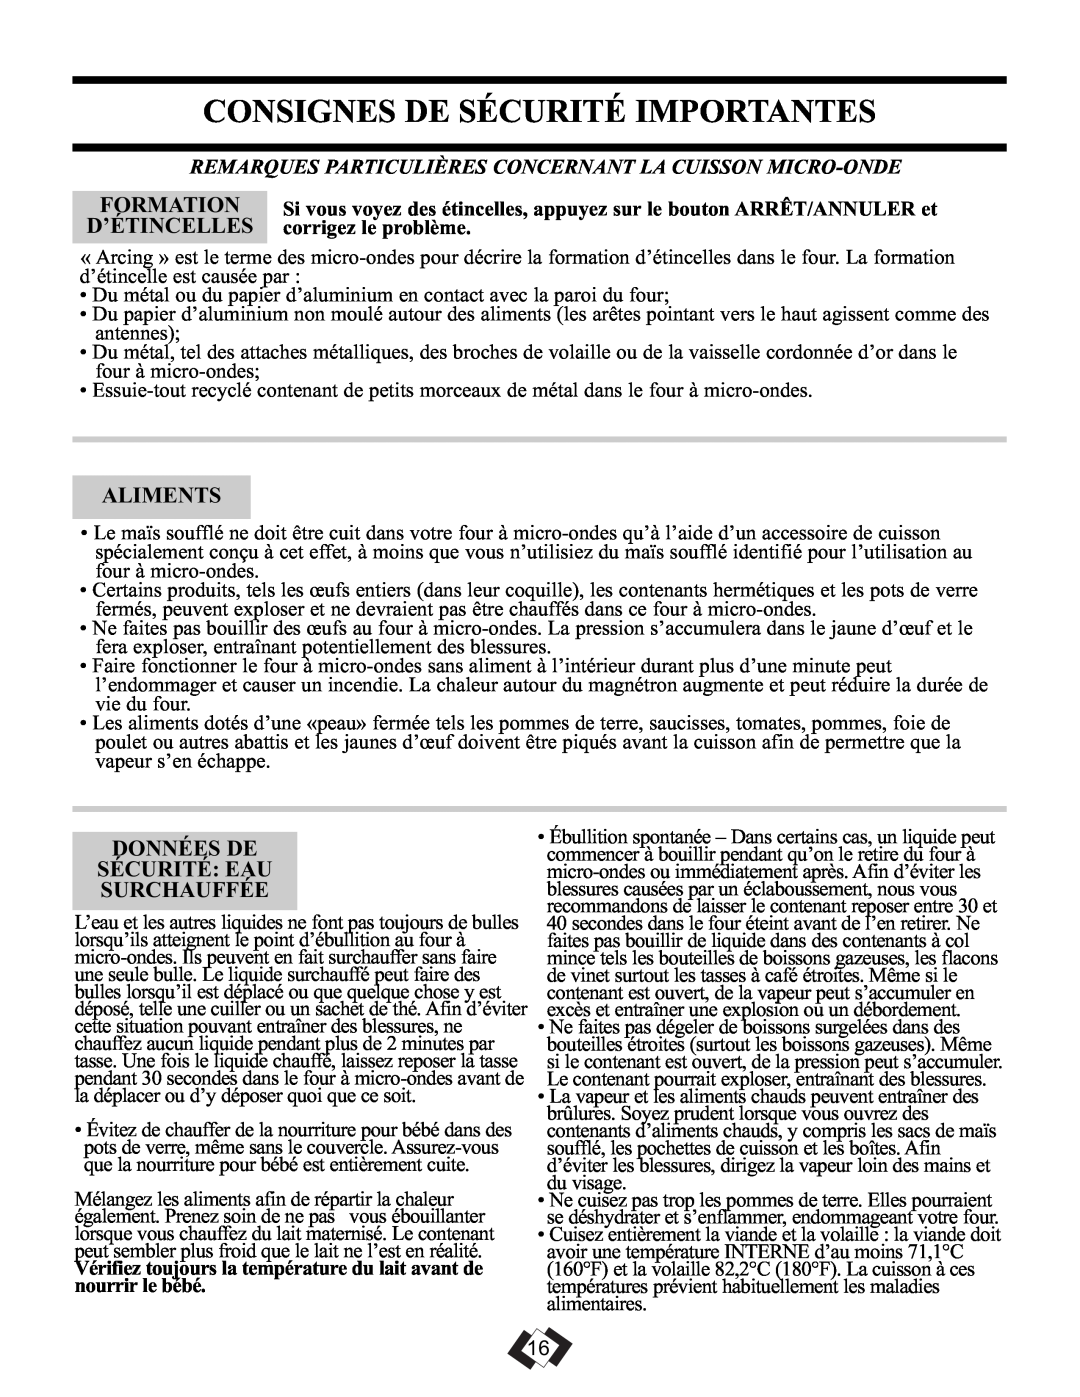 Danby DMW099BLSDD operating instructions Consignes De Sécurité Importantes, Formation, D’Étincelles, Aliments 